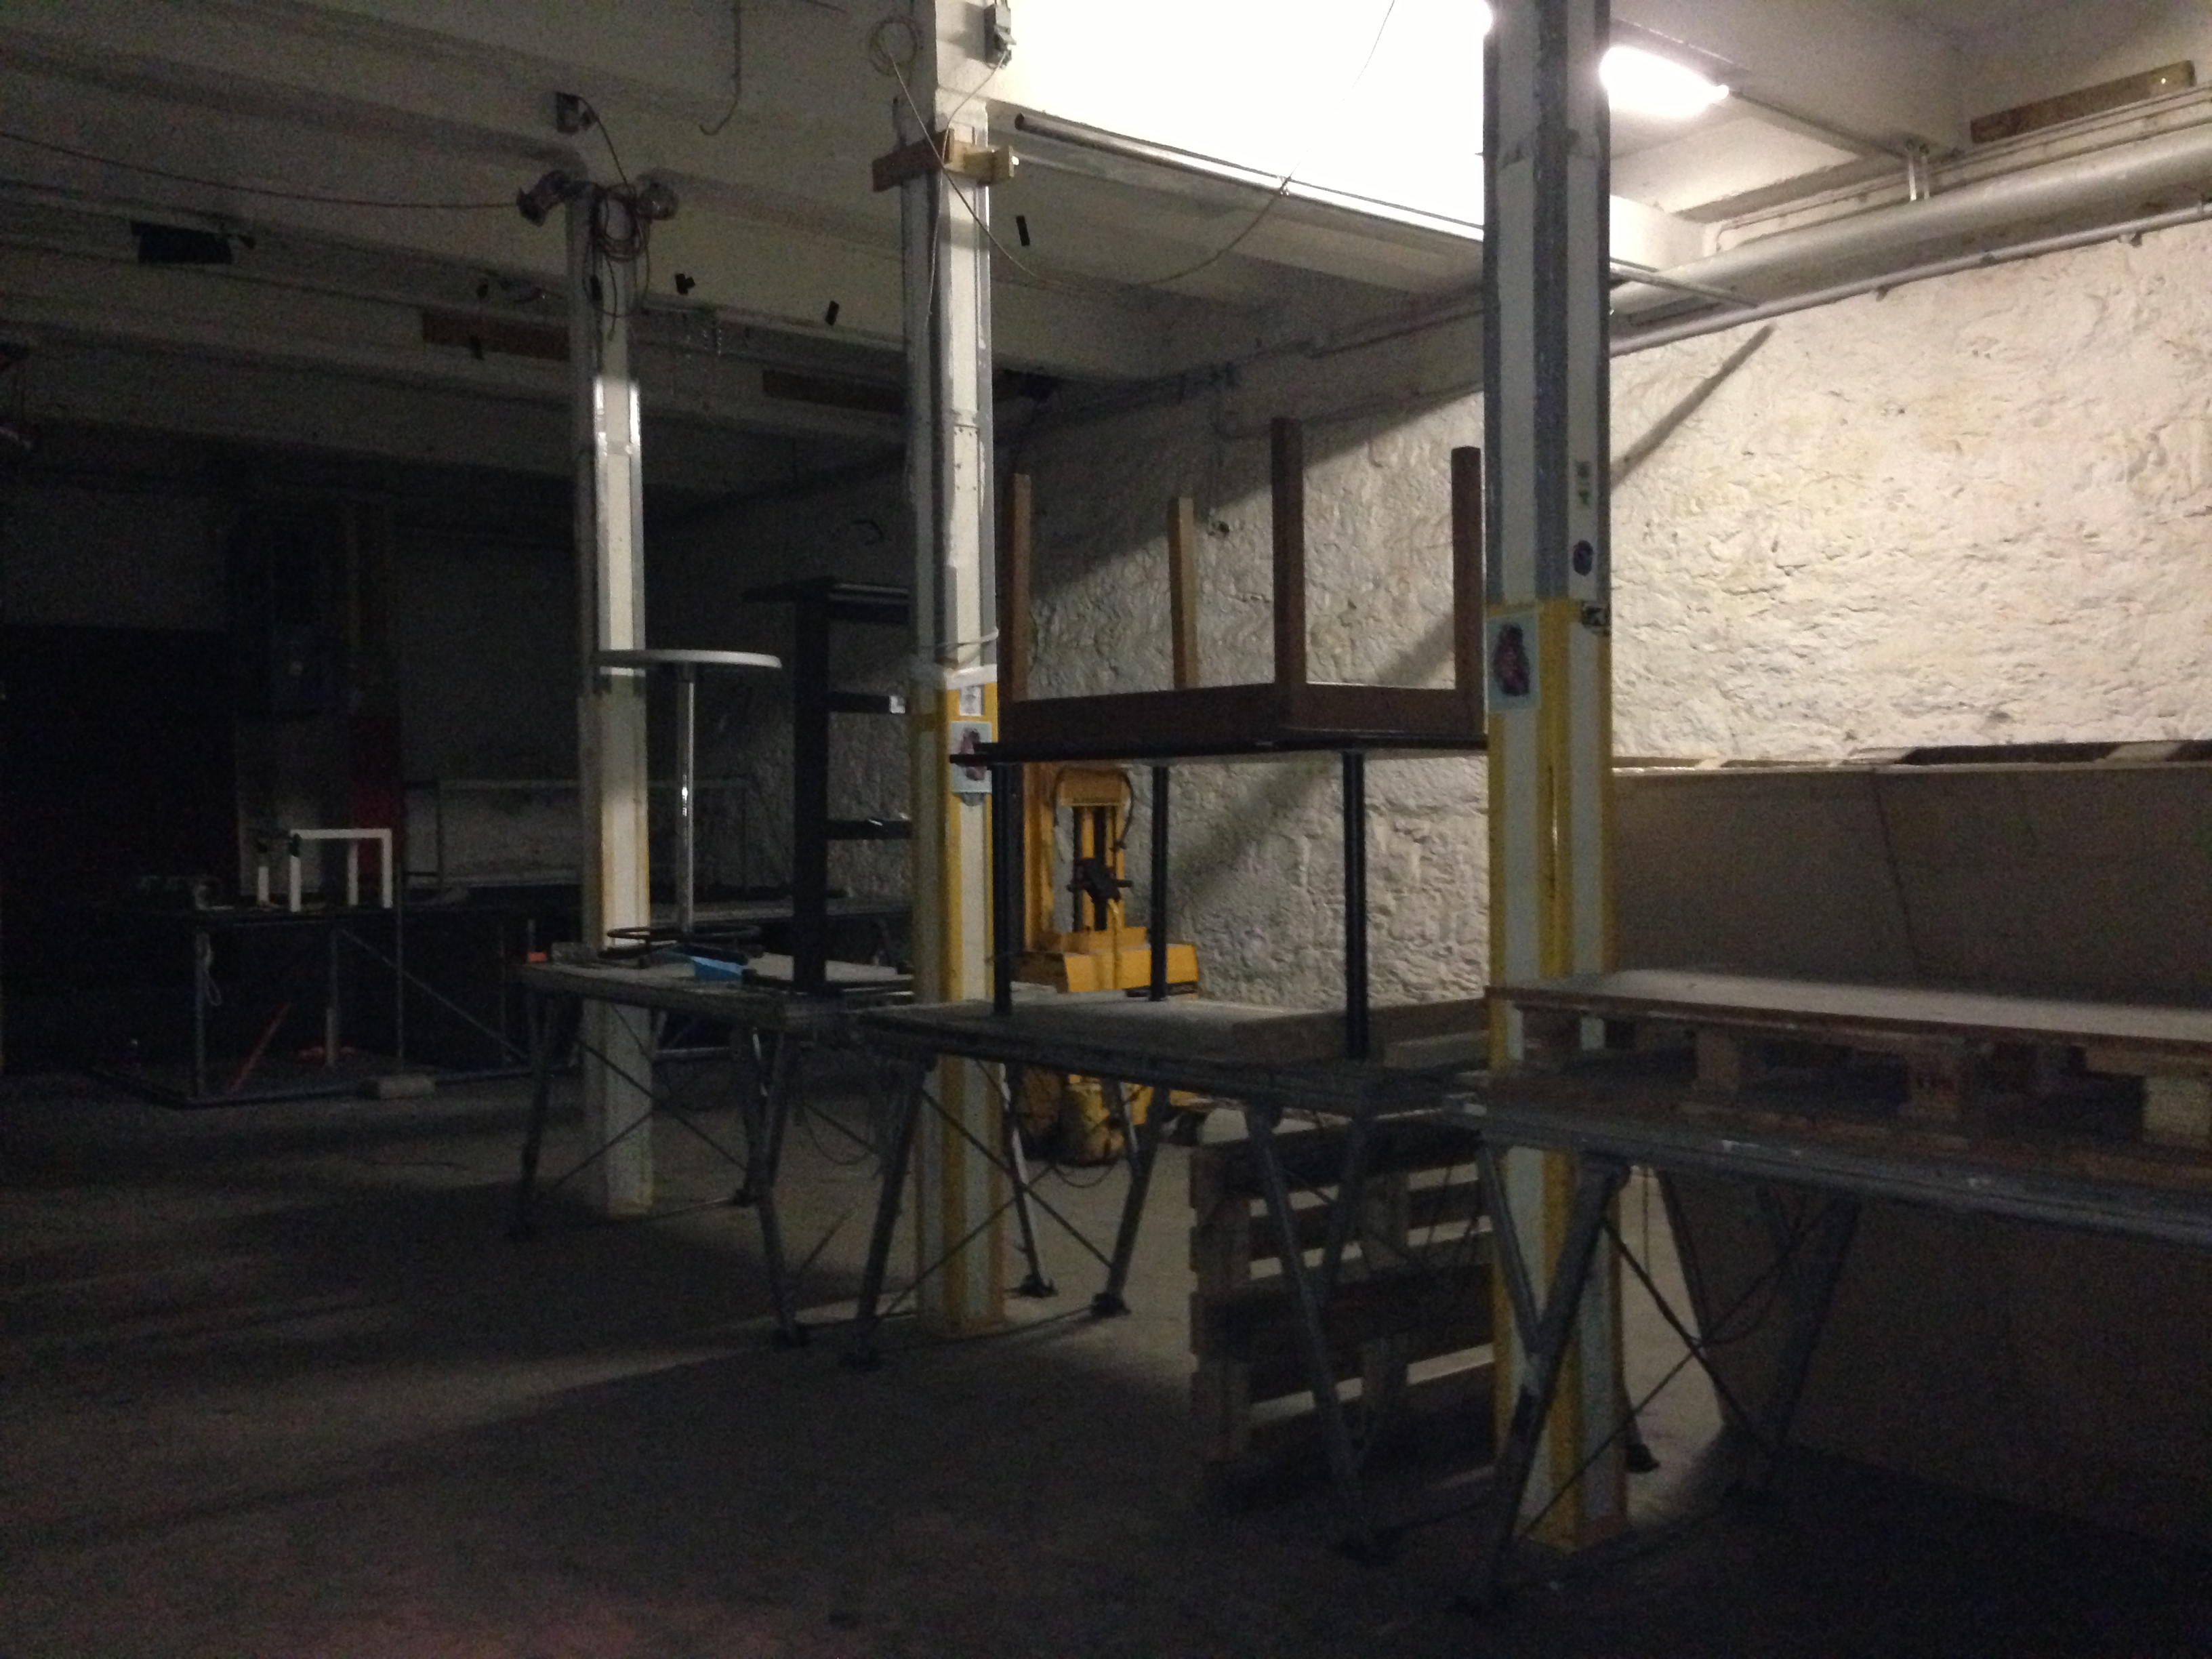 Die Veranstaltungsräume der Papierfabrik sind leer. Leer um wieder voll zu werden. Die Vorbereitungen für die „Protestveranstaltung zum neuen Veranstaltungsgesetz“ Ende September sind im Gange: